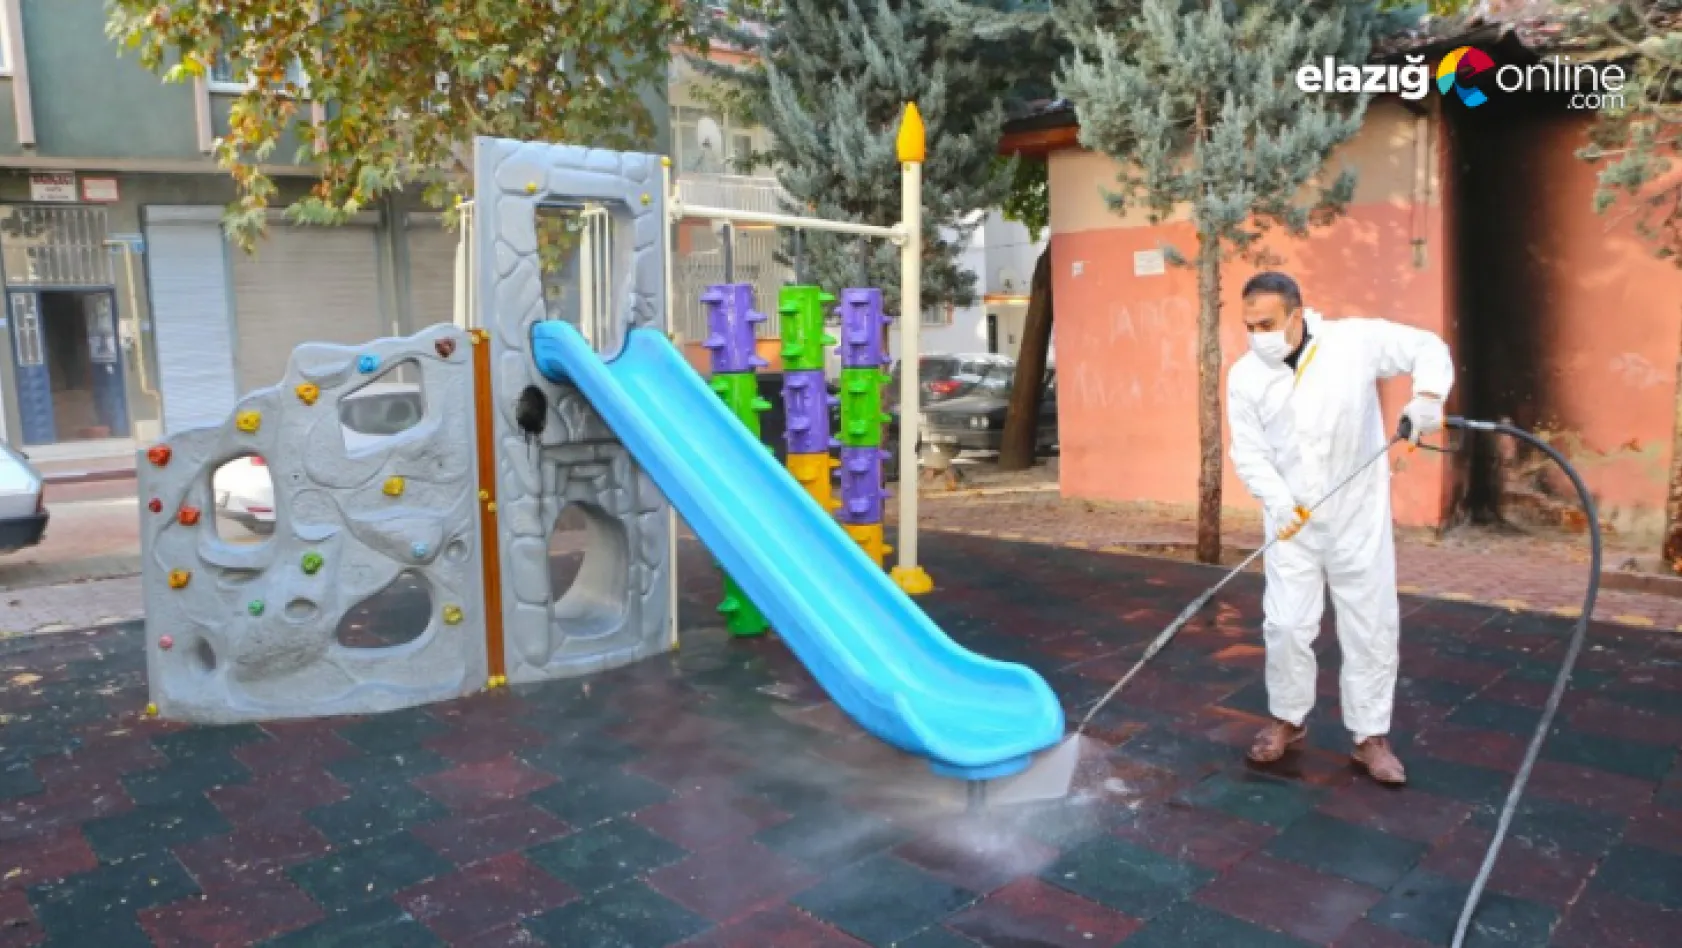 Elazığ Belediyesi hijyen ve temizlik çalışmalarını sürdürüyor